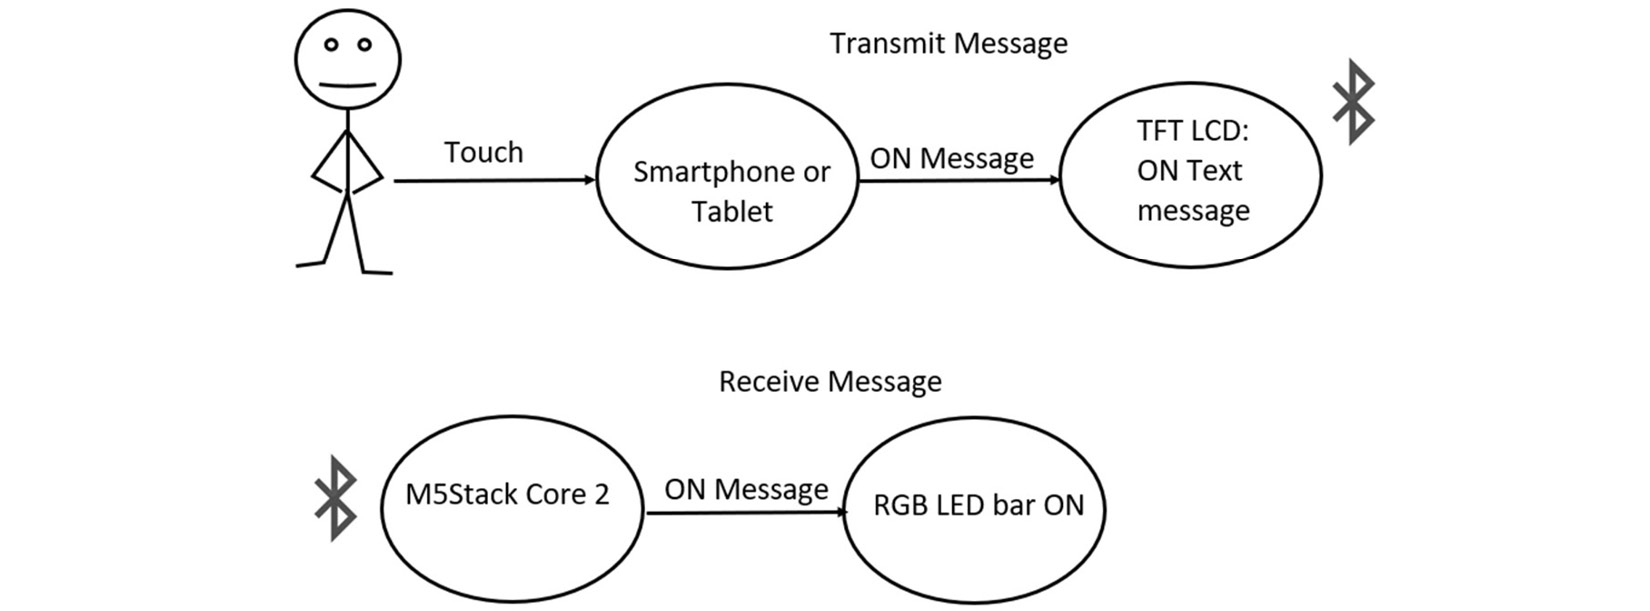 Figure 7.21: Sending an OFF-control message